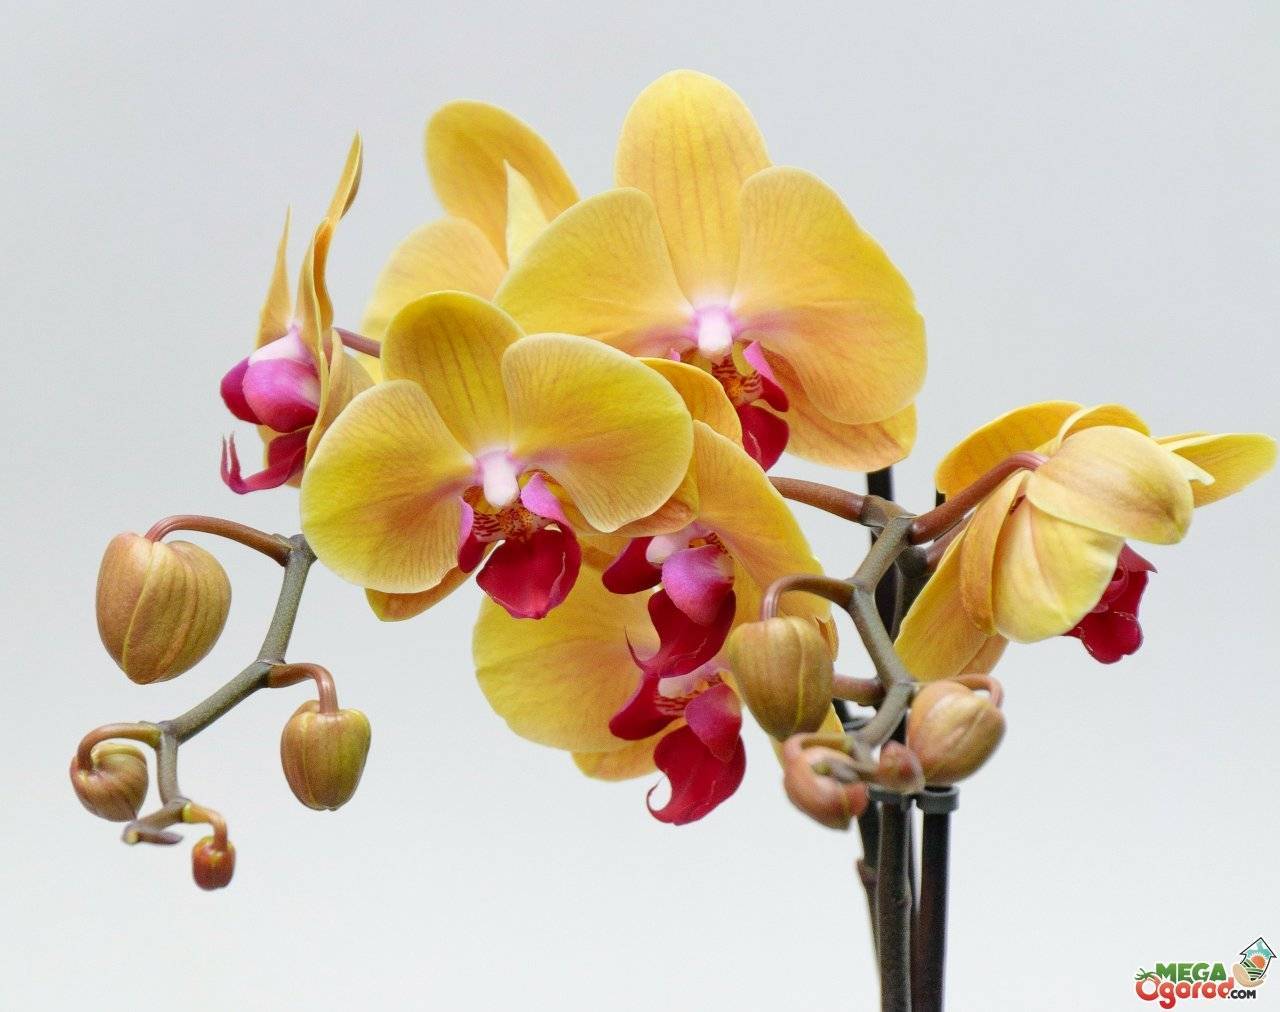 Как ухаживать за орхидеей после ее цветения, чтобы она вновь зацвела?